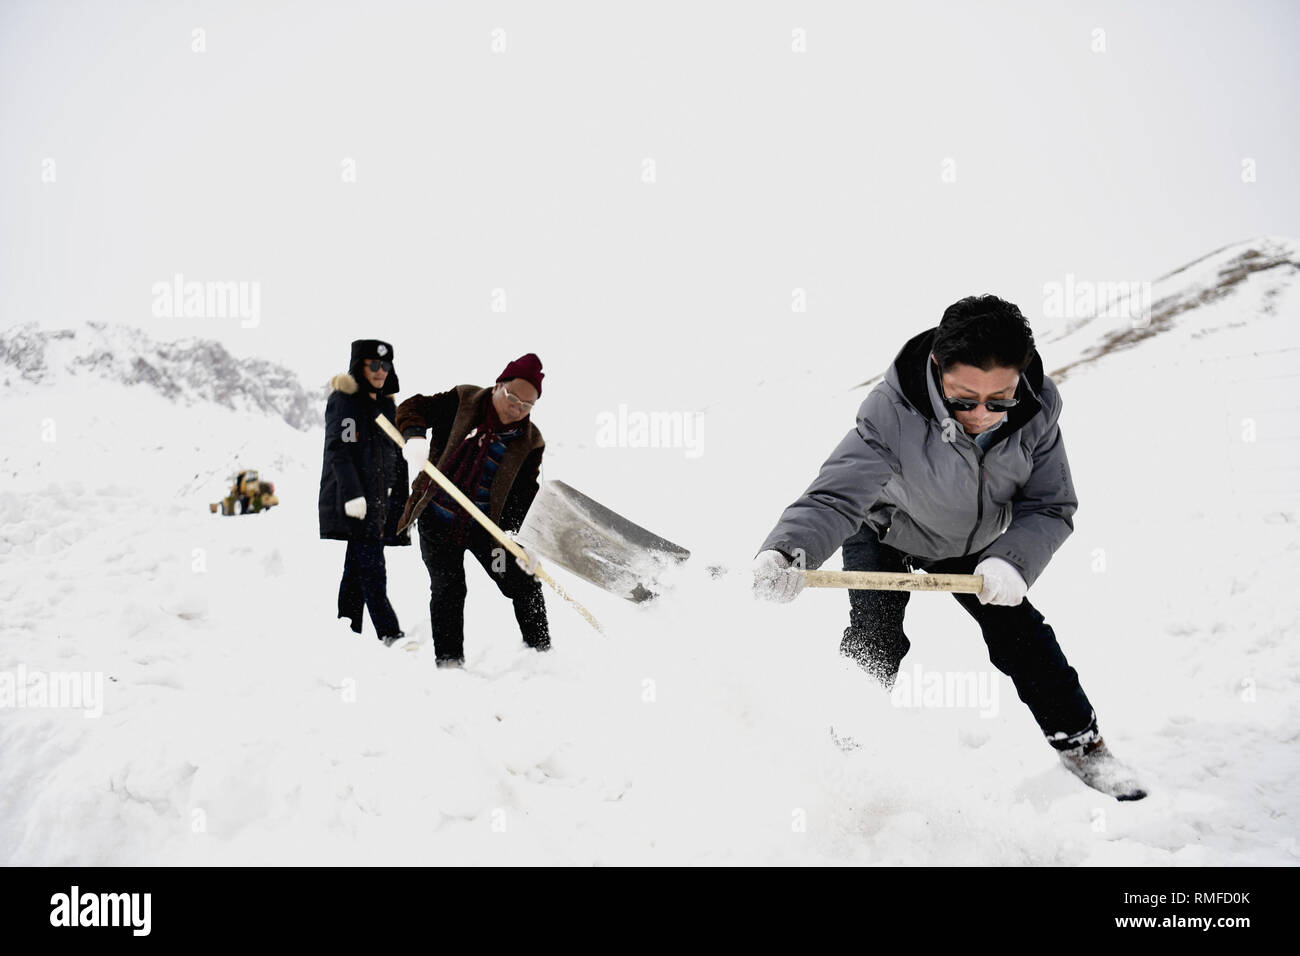 Yushu, dans la province de Qinghai en Chine. Feb 14, 2019. Les gens la neige propre dans Zhaqing Zaduo ville du comté de la préfecture autonome tibétaine de Yushu, dans la province de Qinghai en Chine, le 14 février 2019. Après des jours de tempêtes de neige, les routes dans de nombreux domaines de la préfecture autonome tibétaine de Yushu sont couverts sous la neige jusqu'à 45 centimètres. L'autorité locale d'Zaduo a envoyé 37 grandes machines pour le blizzard les zones les plus touchées pour effacer les routes couvertes de neige. Credit : Zhang Long/Xinhua/Alamy Live News Banque D'Images